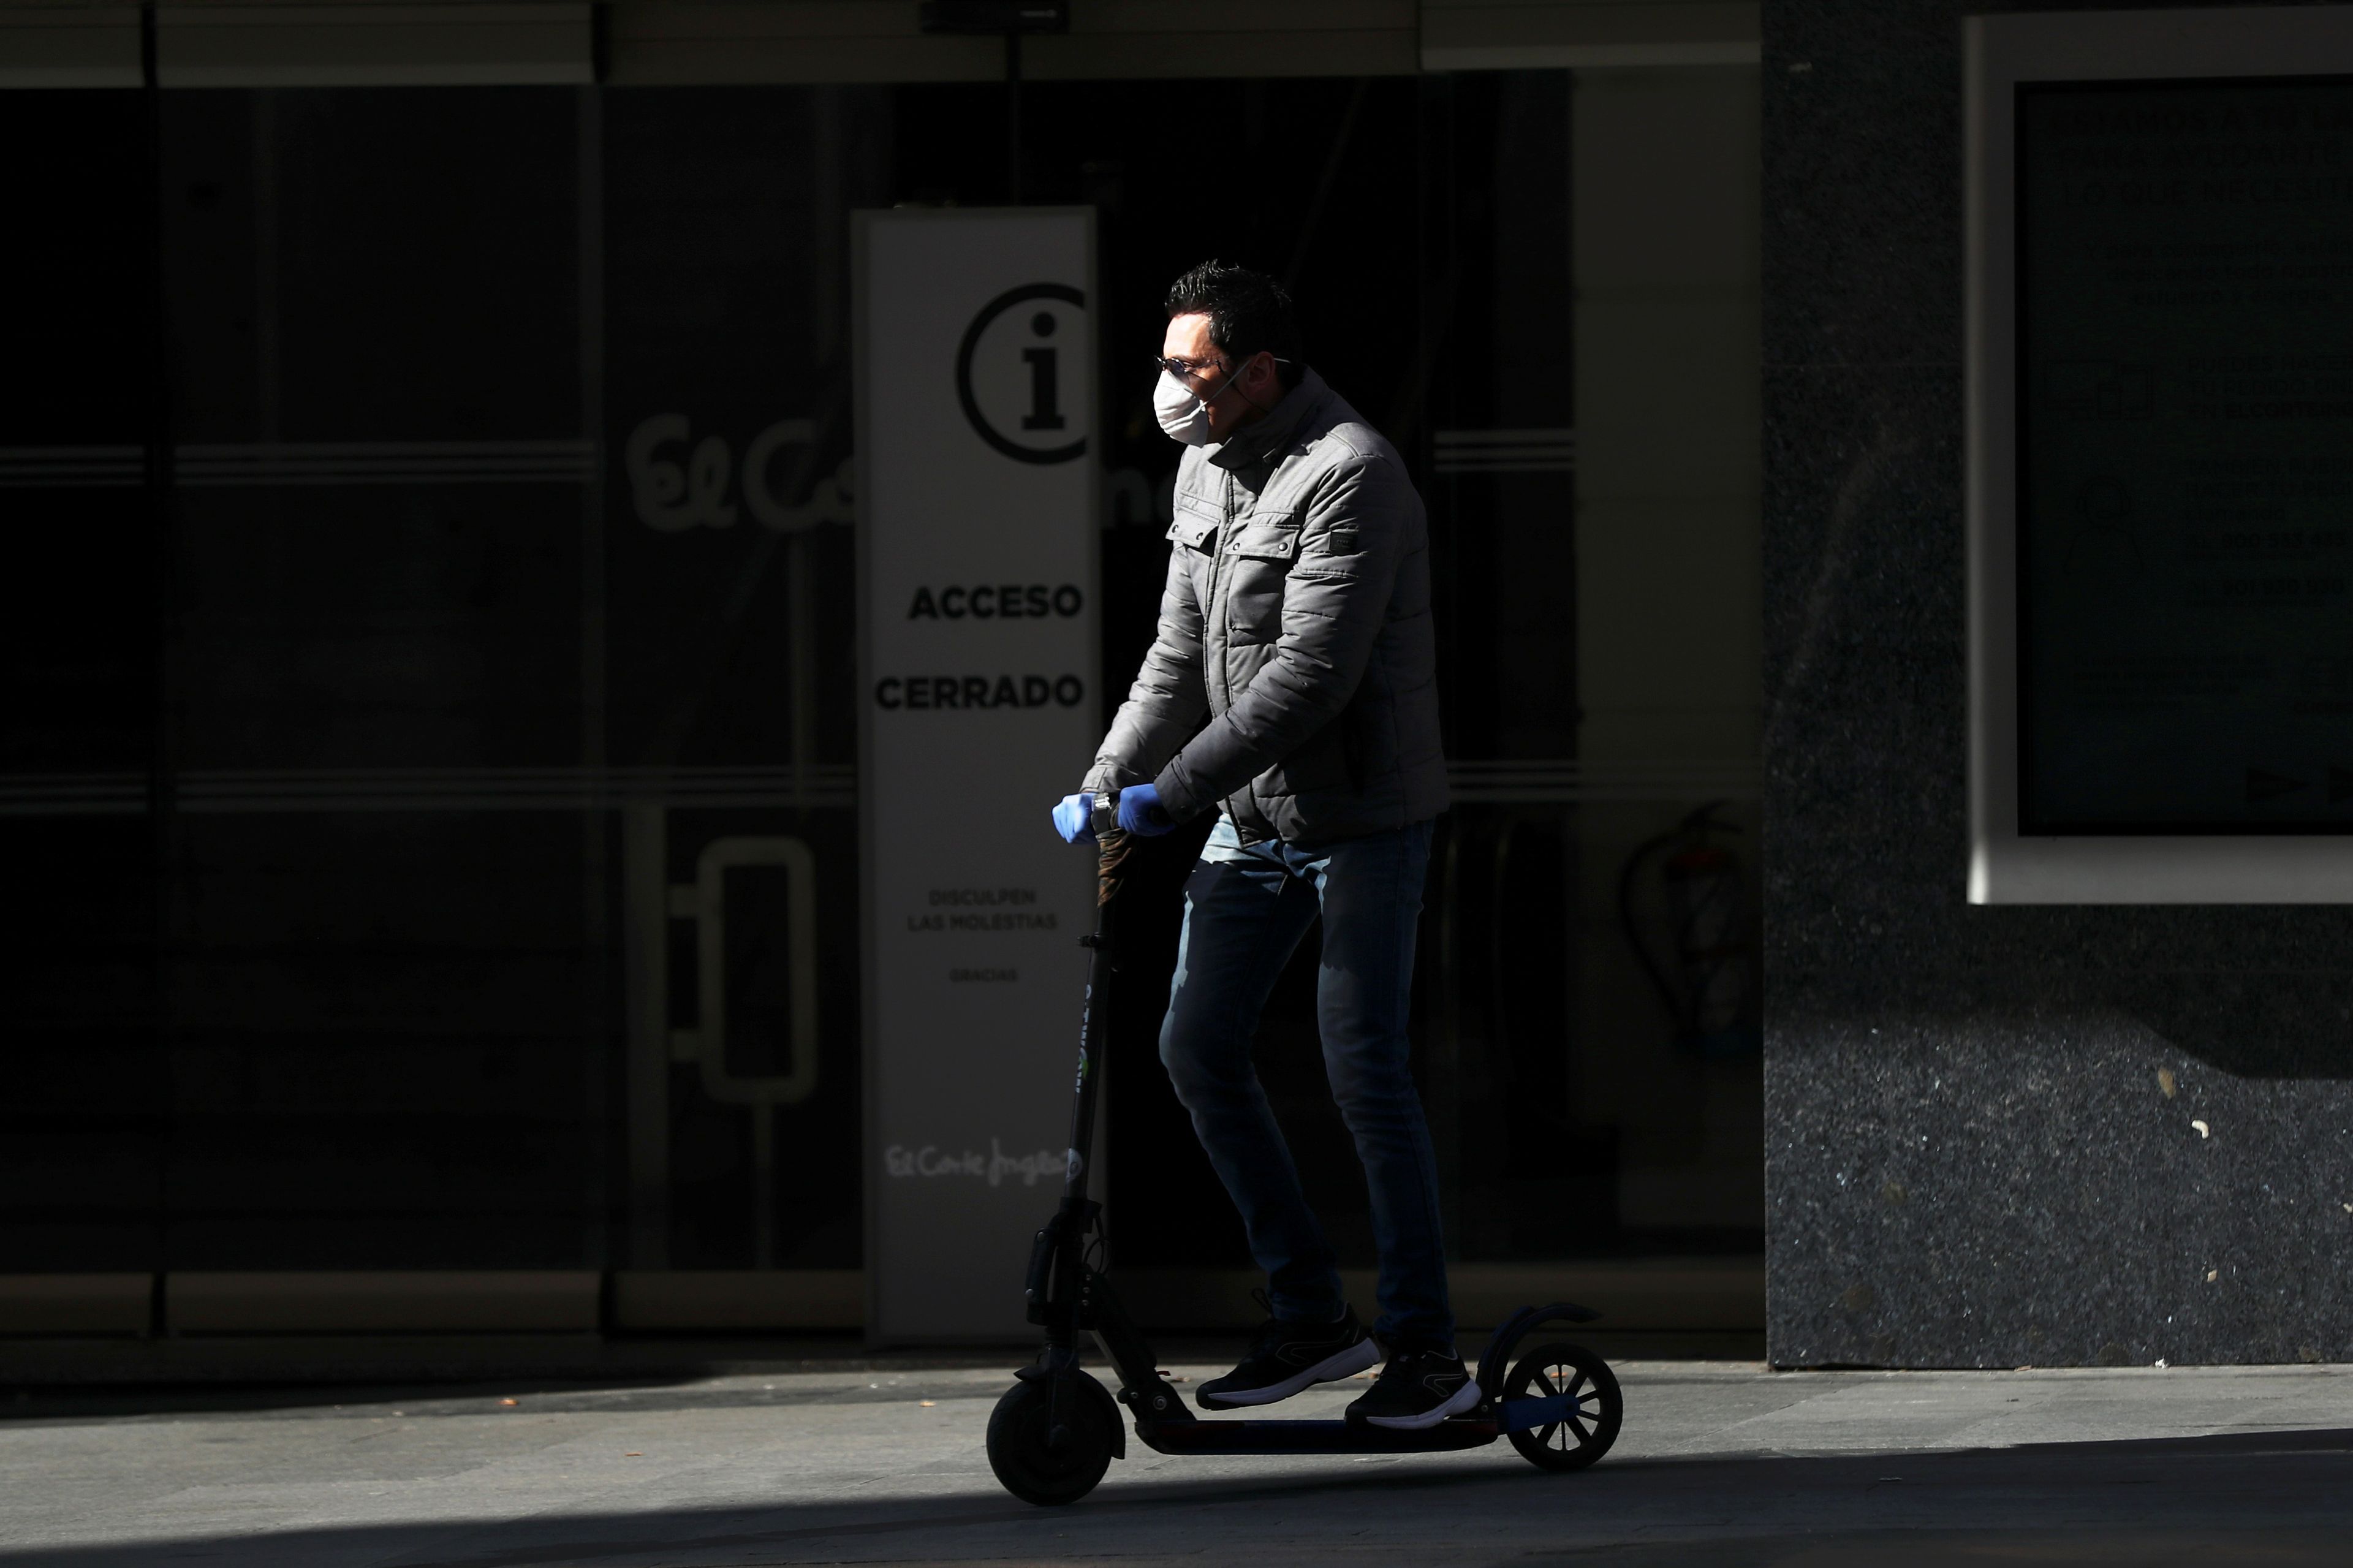 Un hombre conduce un patinete eléctrico en Madrid en plena pandemia del coronavirus.